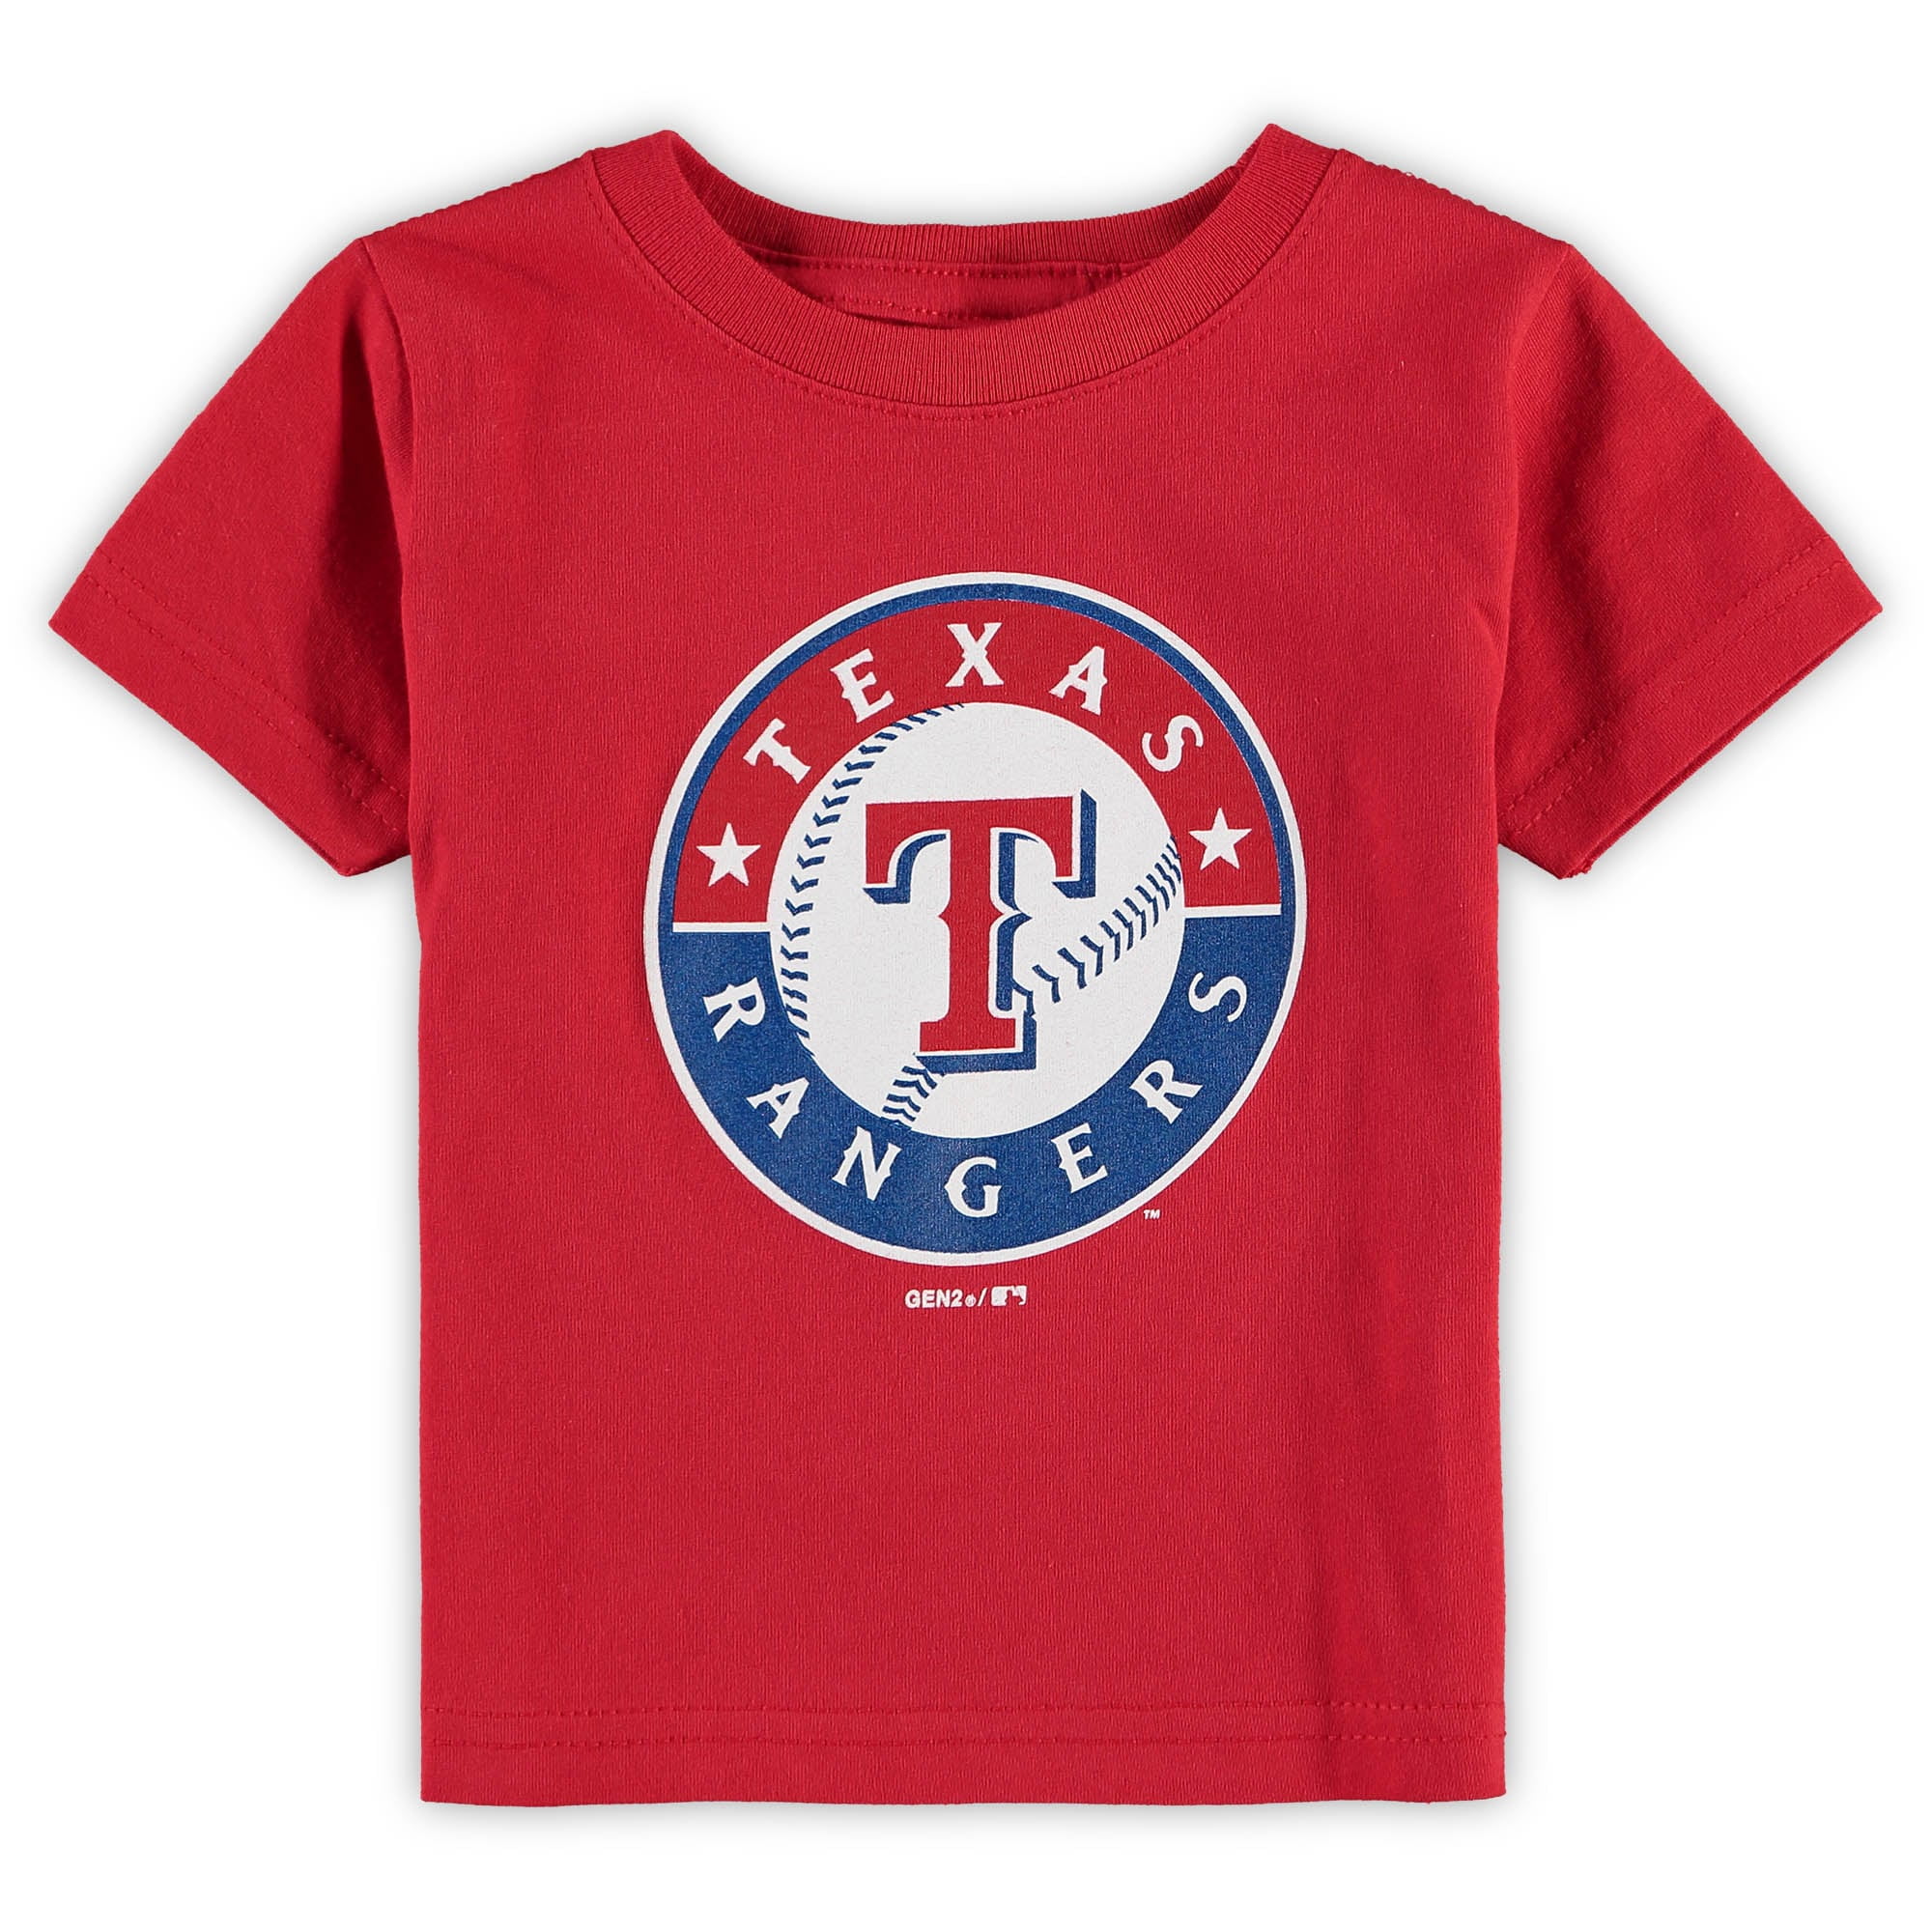 Outerstuff Boys' Texas Rangers Stealing Home T-shirt